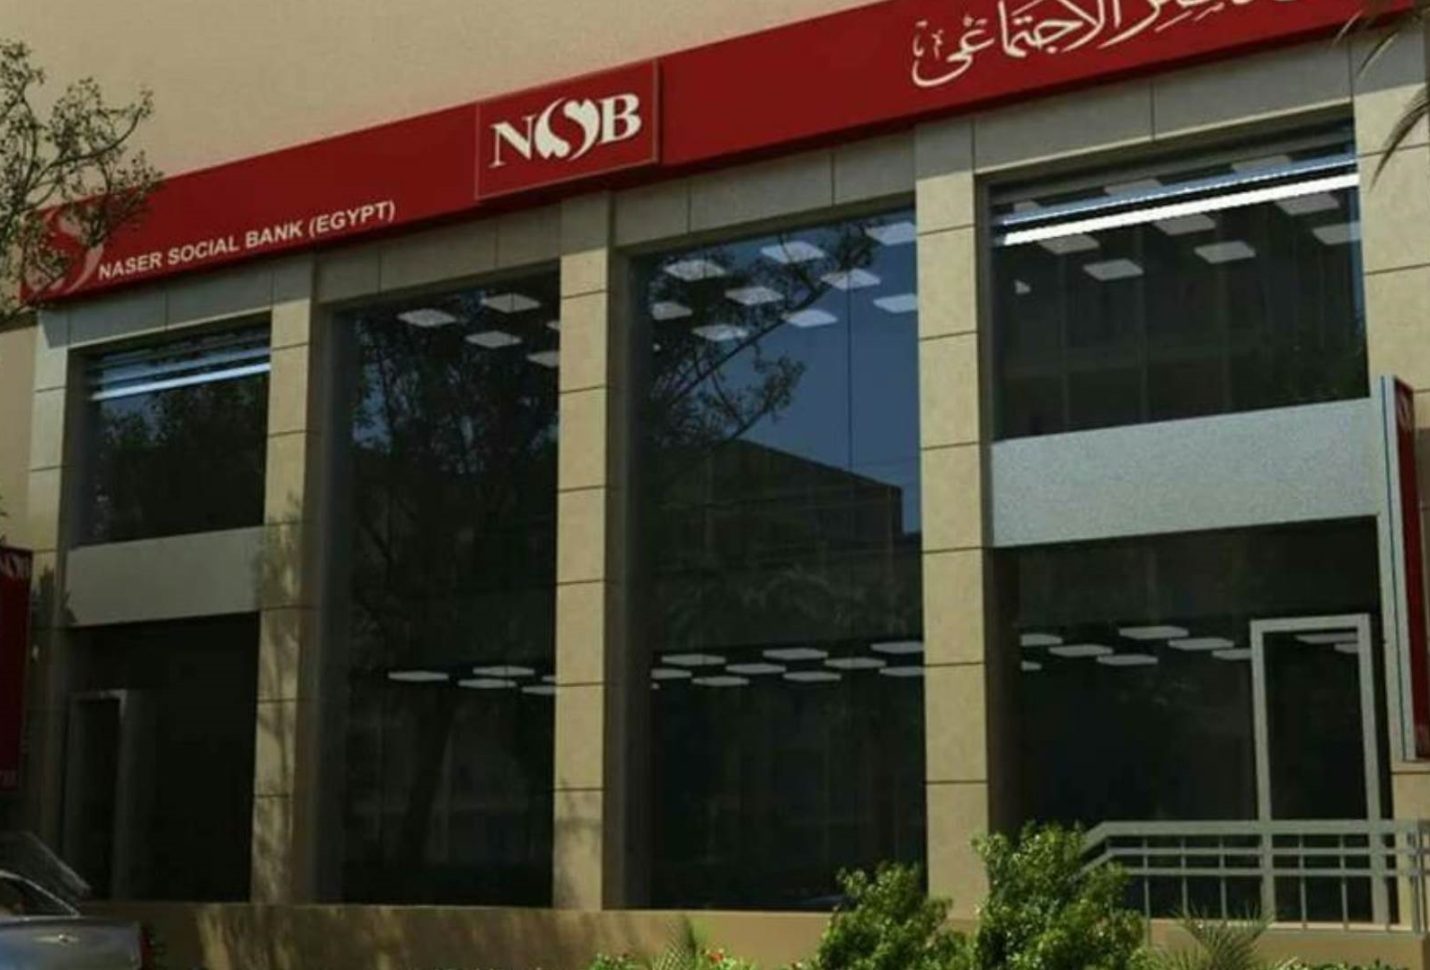 بنك ناصر الاجتماعي يعلن نجاح مبادرة  «وظيفة تك» في تشغيل الخريجين بكبرى شركات التكنولوجيا 